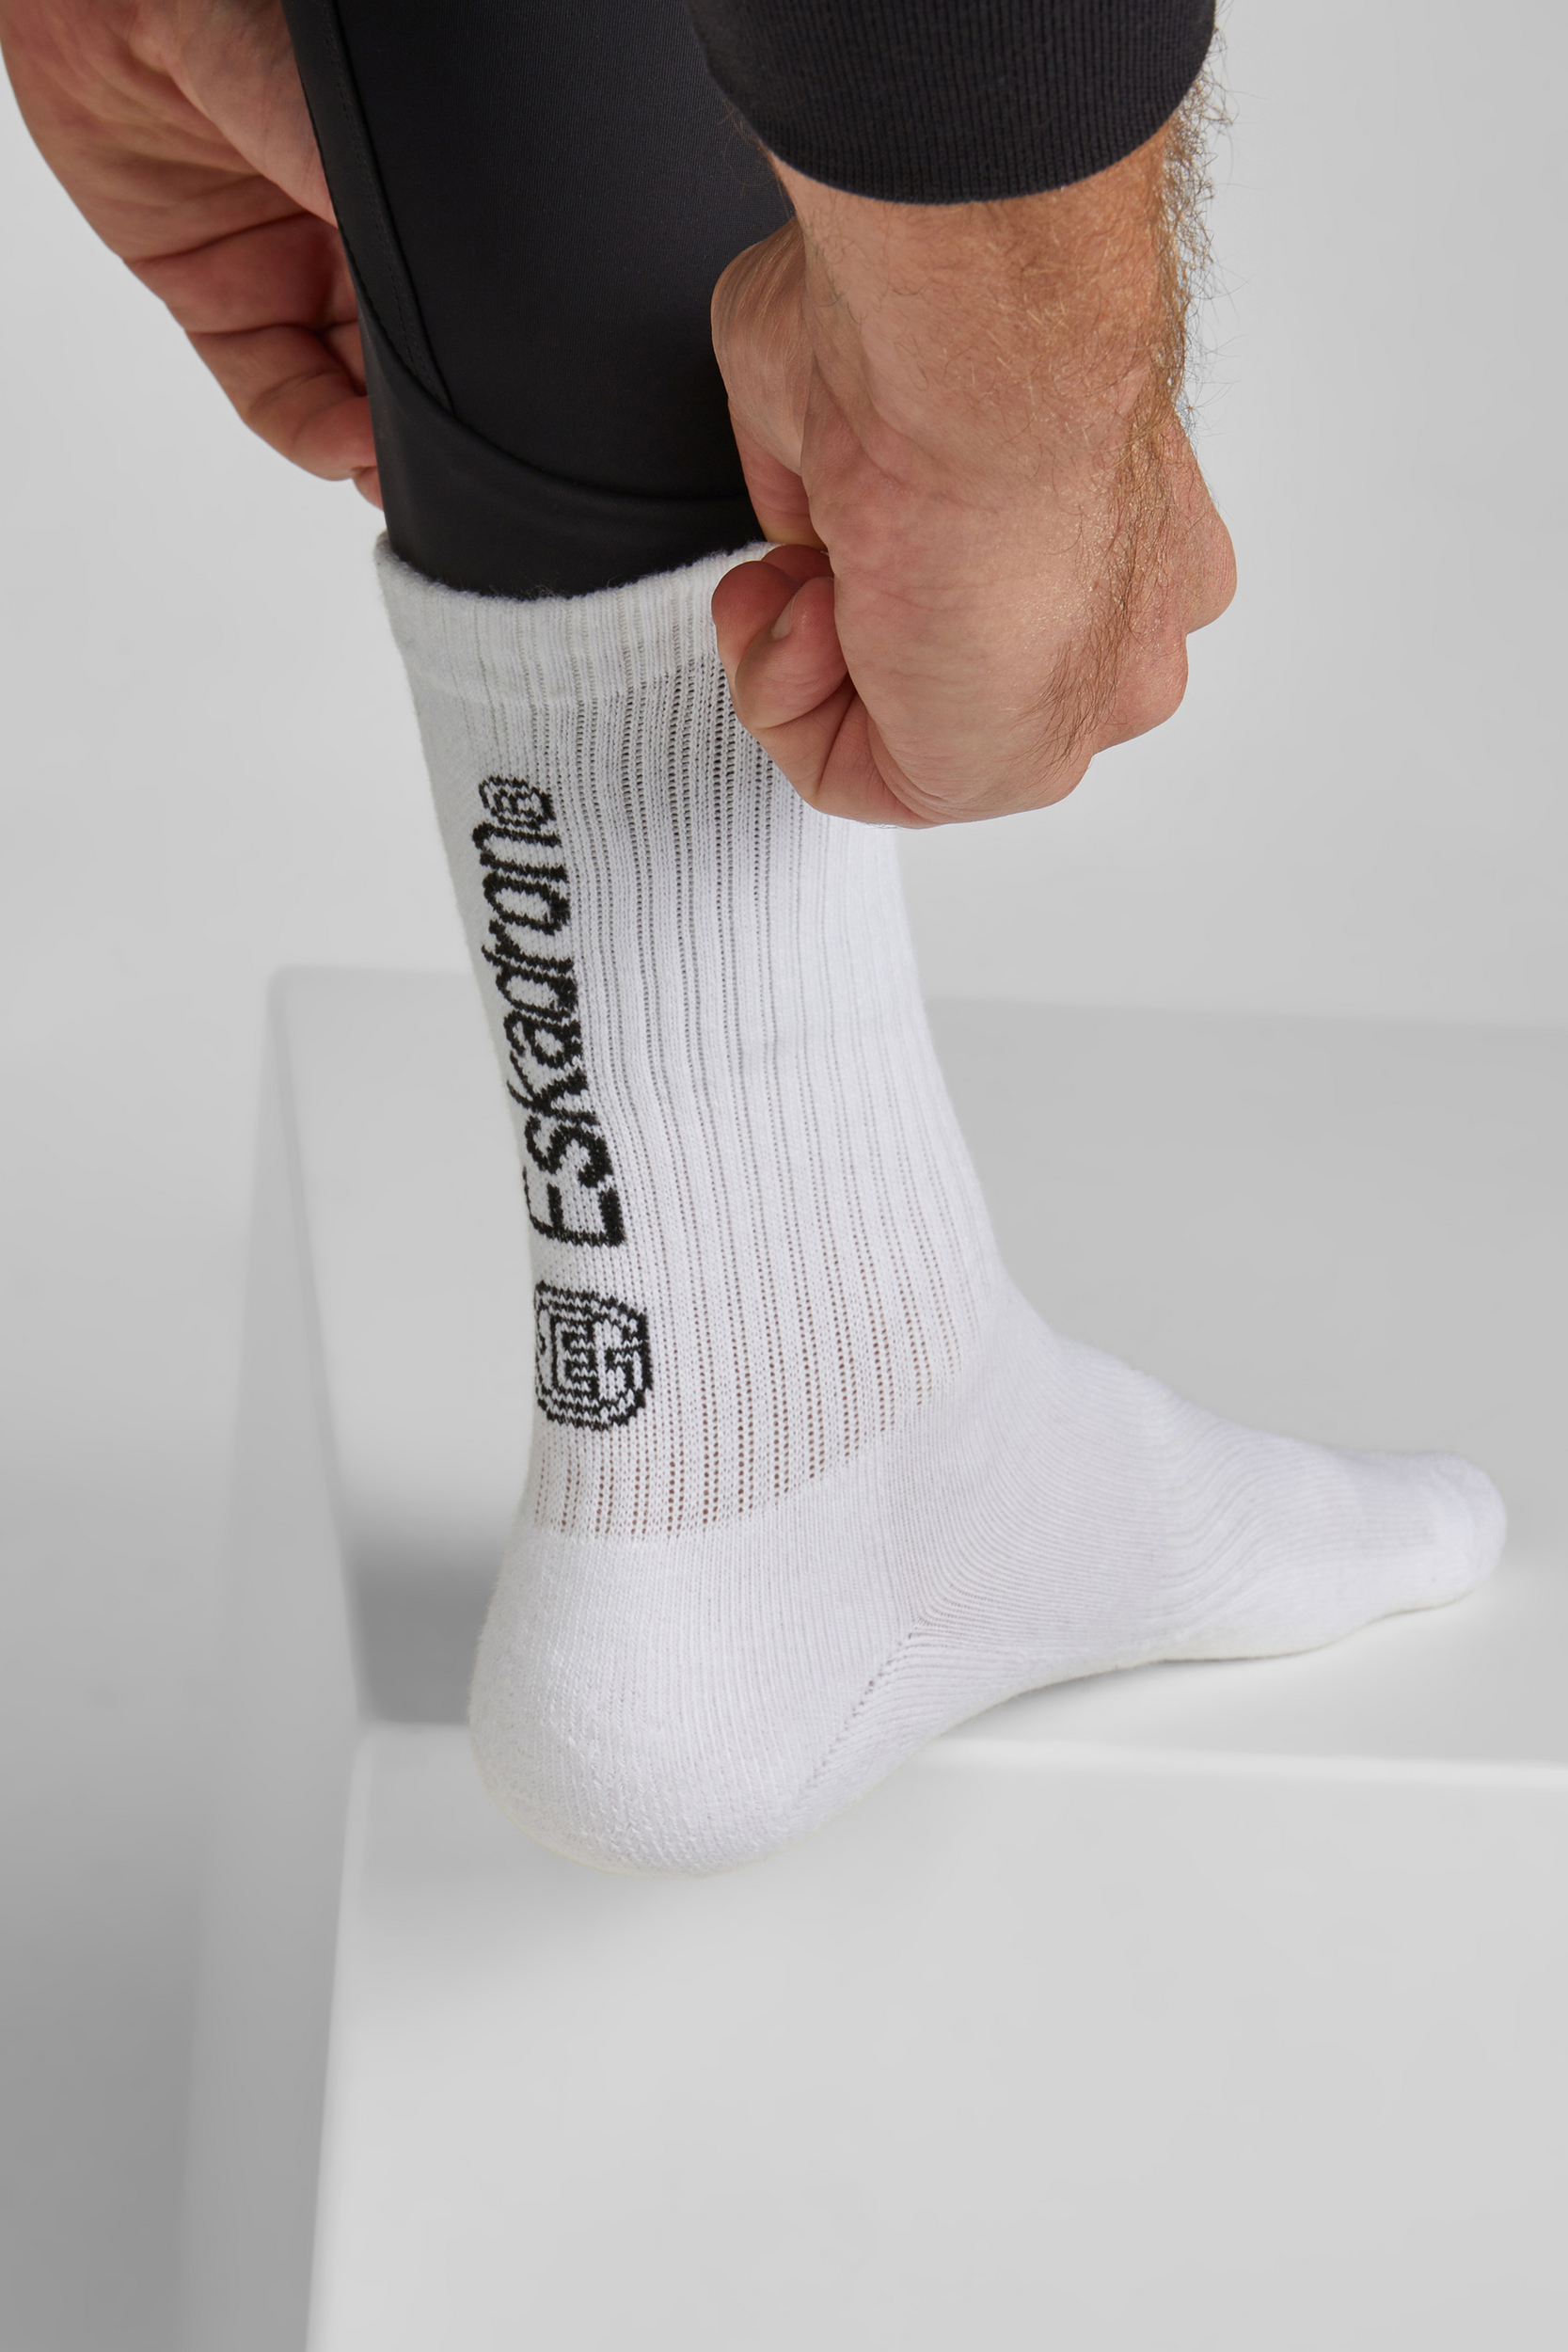 ESKADRON Socken Damen sportlich & stylisch Dynamic 24 - white - 41-43 - 2